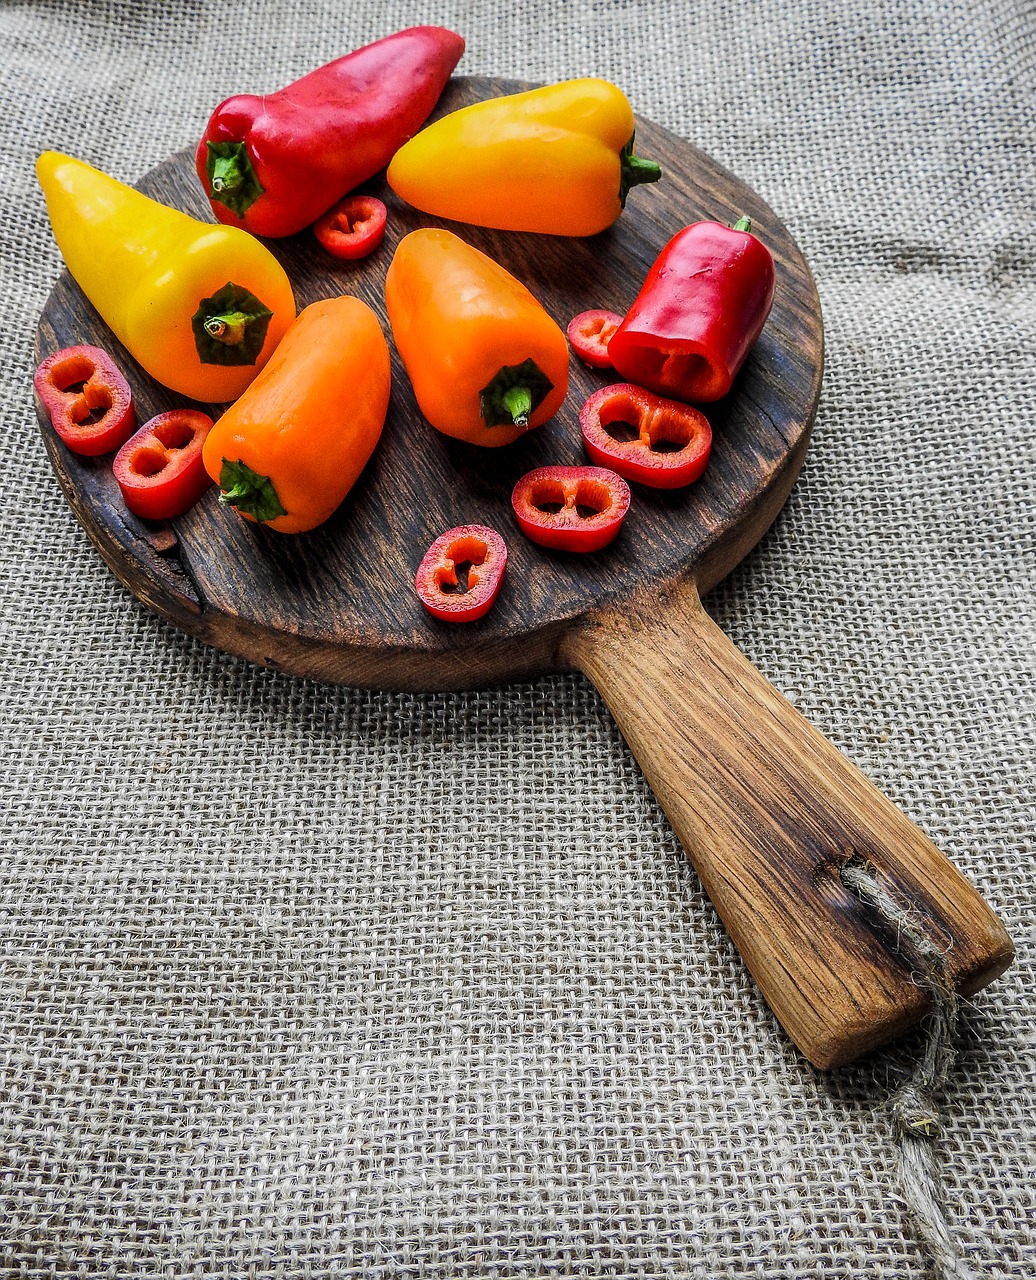 Image - peppers vegetable ingredient food